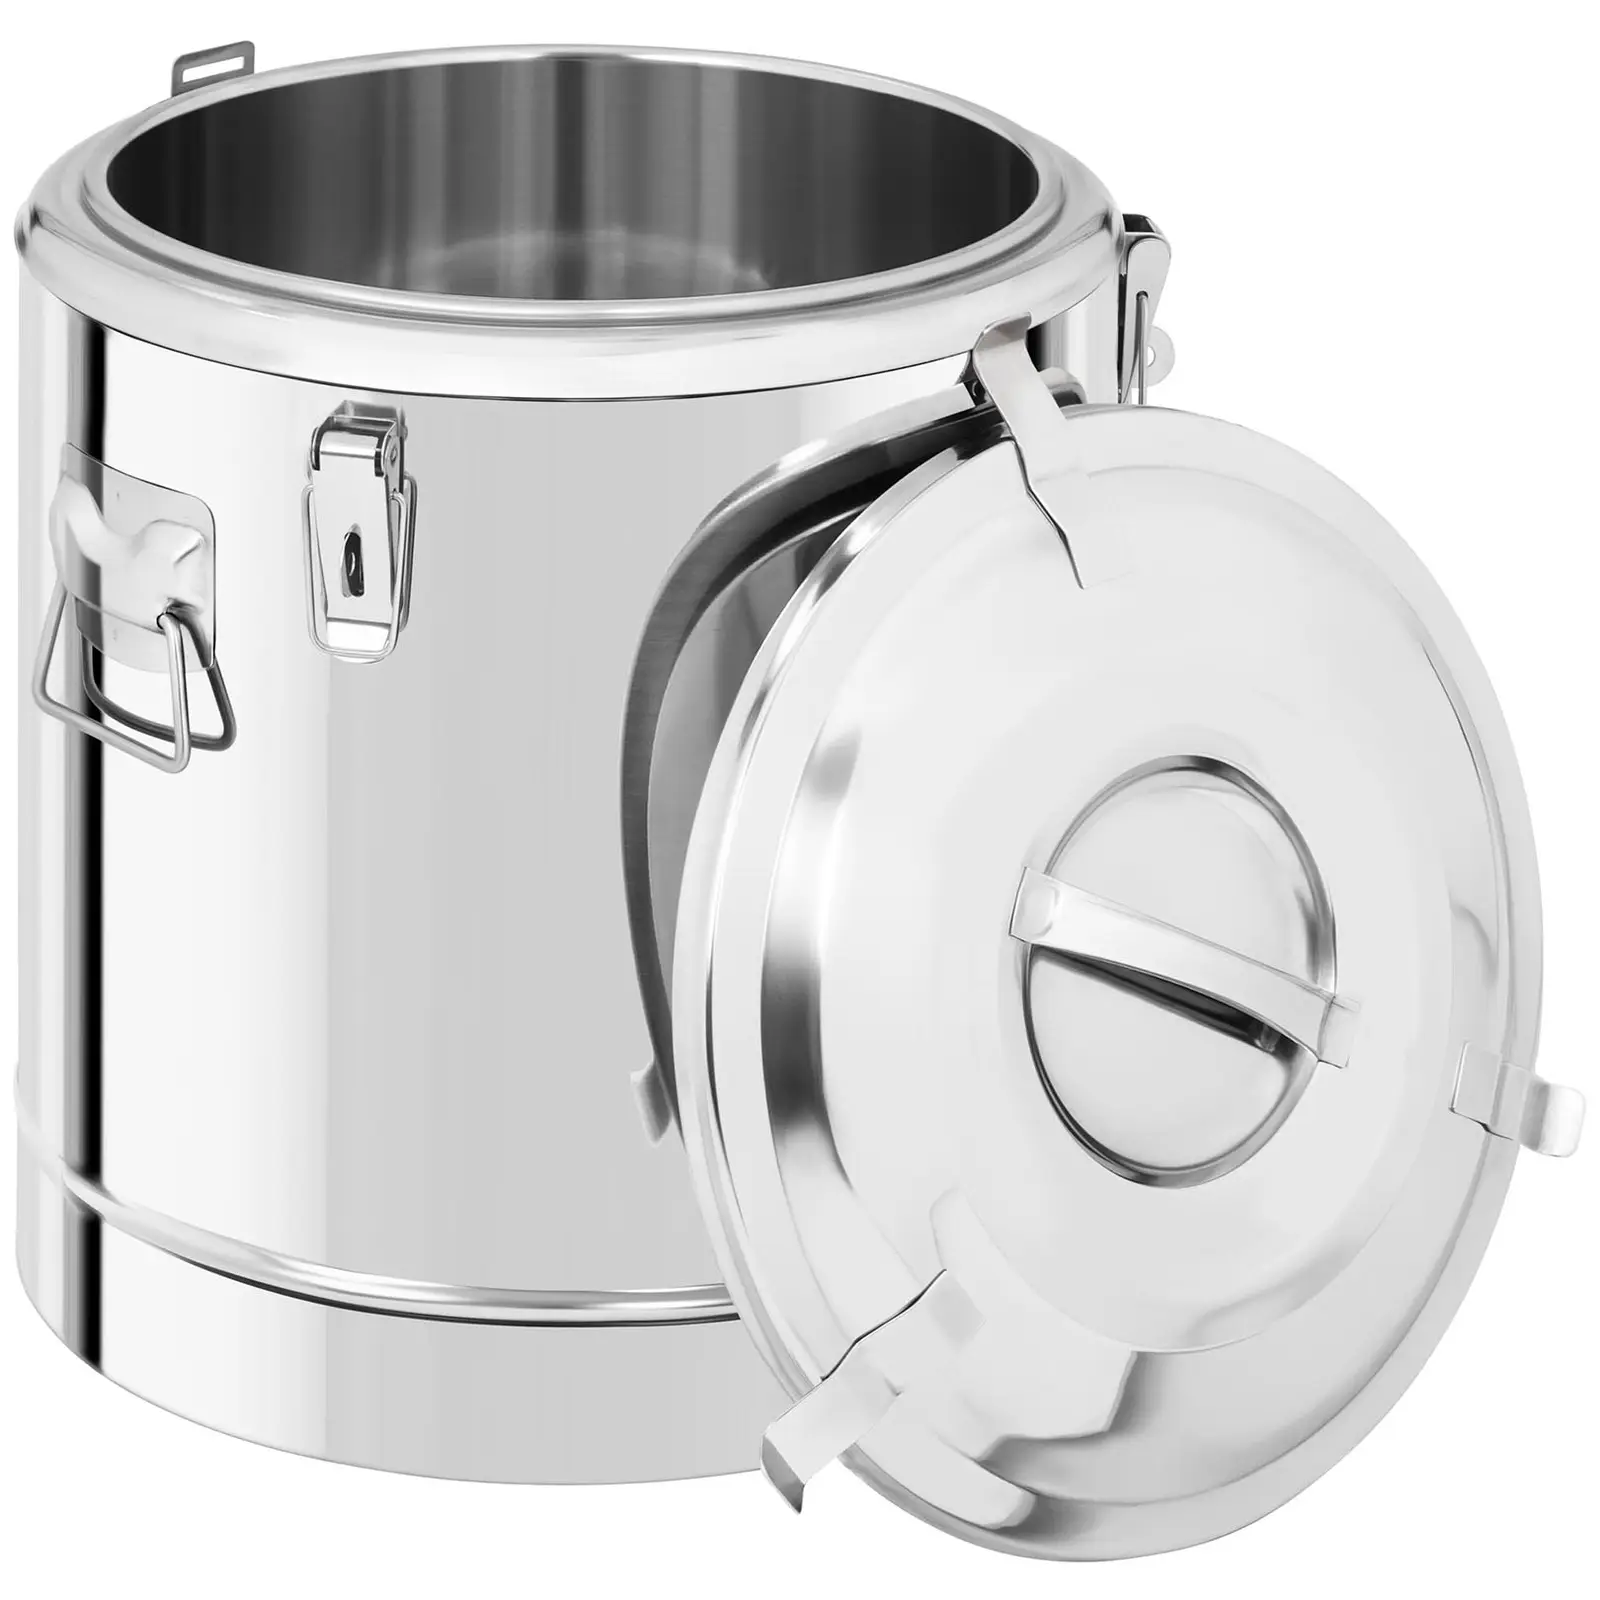 Contenitore termico in acciaio inox - 30 L - con rubinetto di scarico